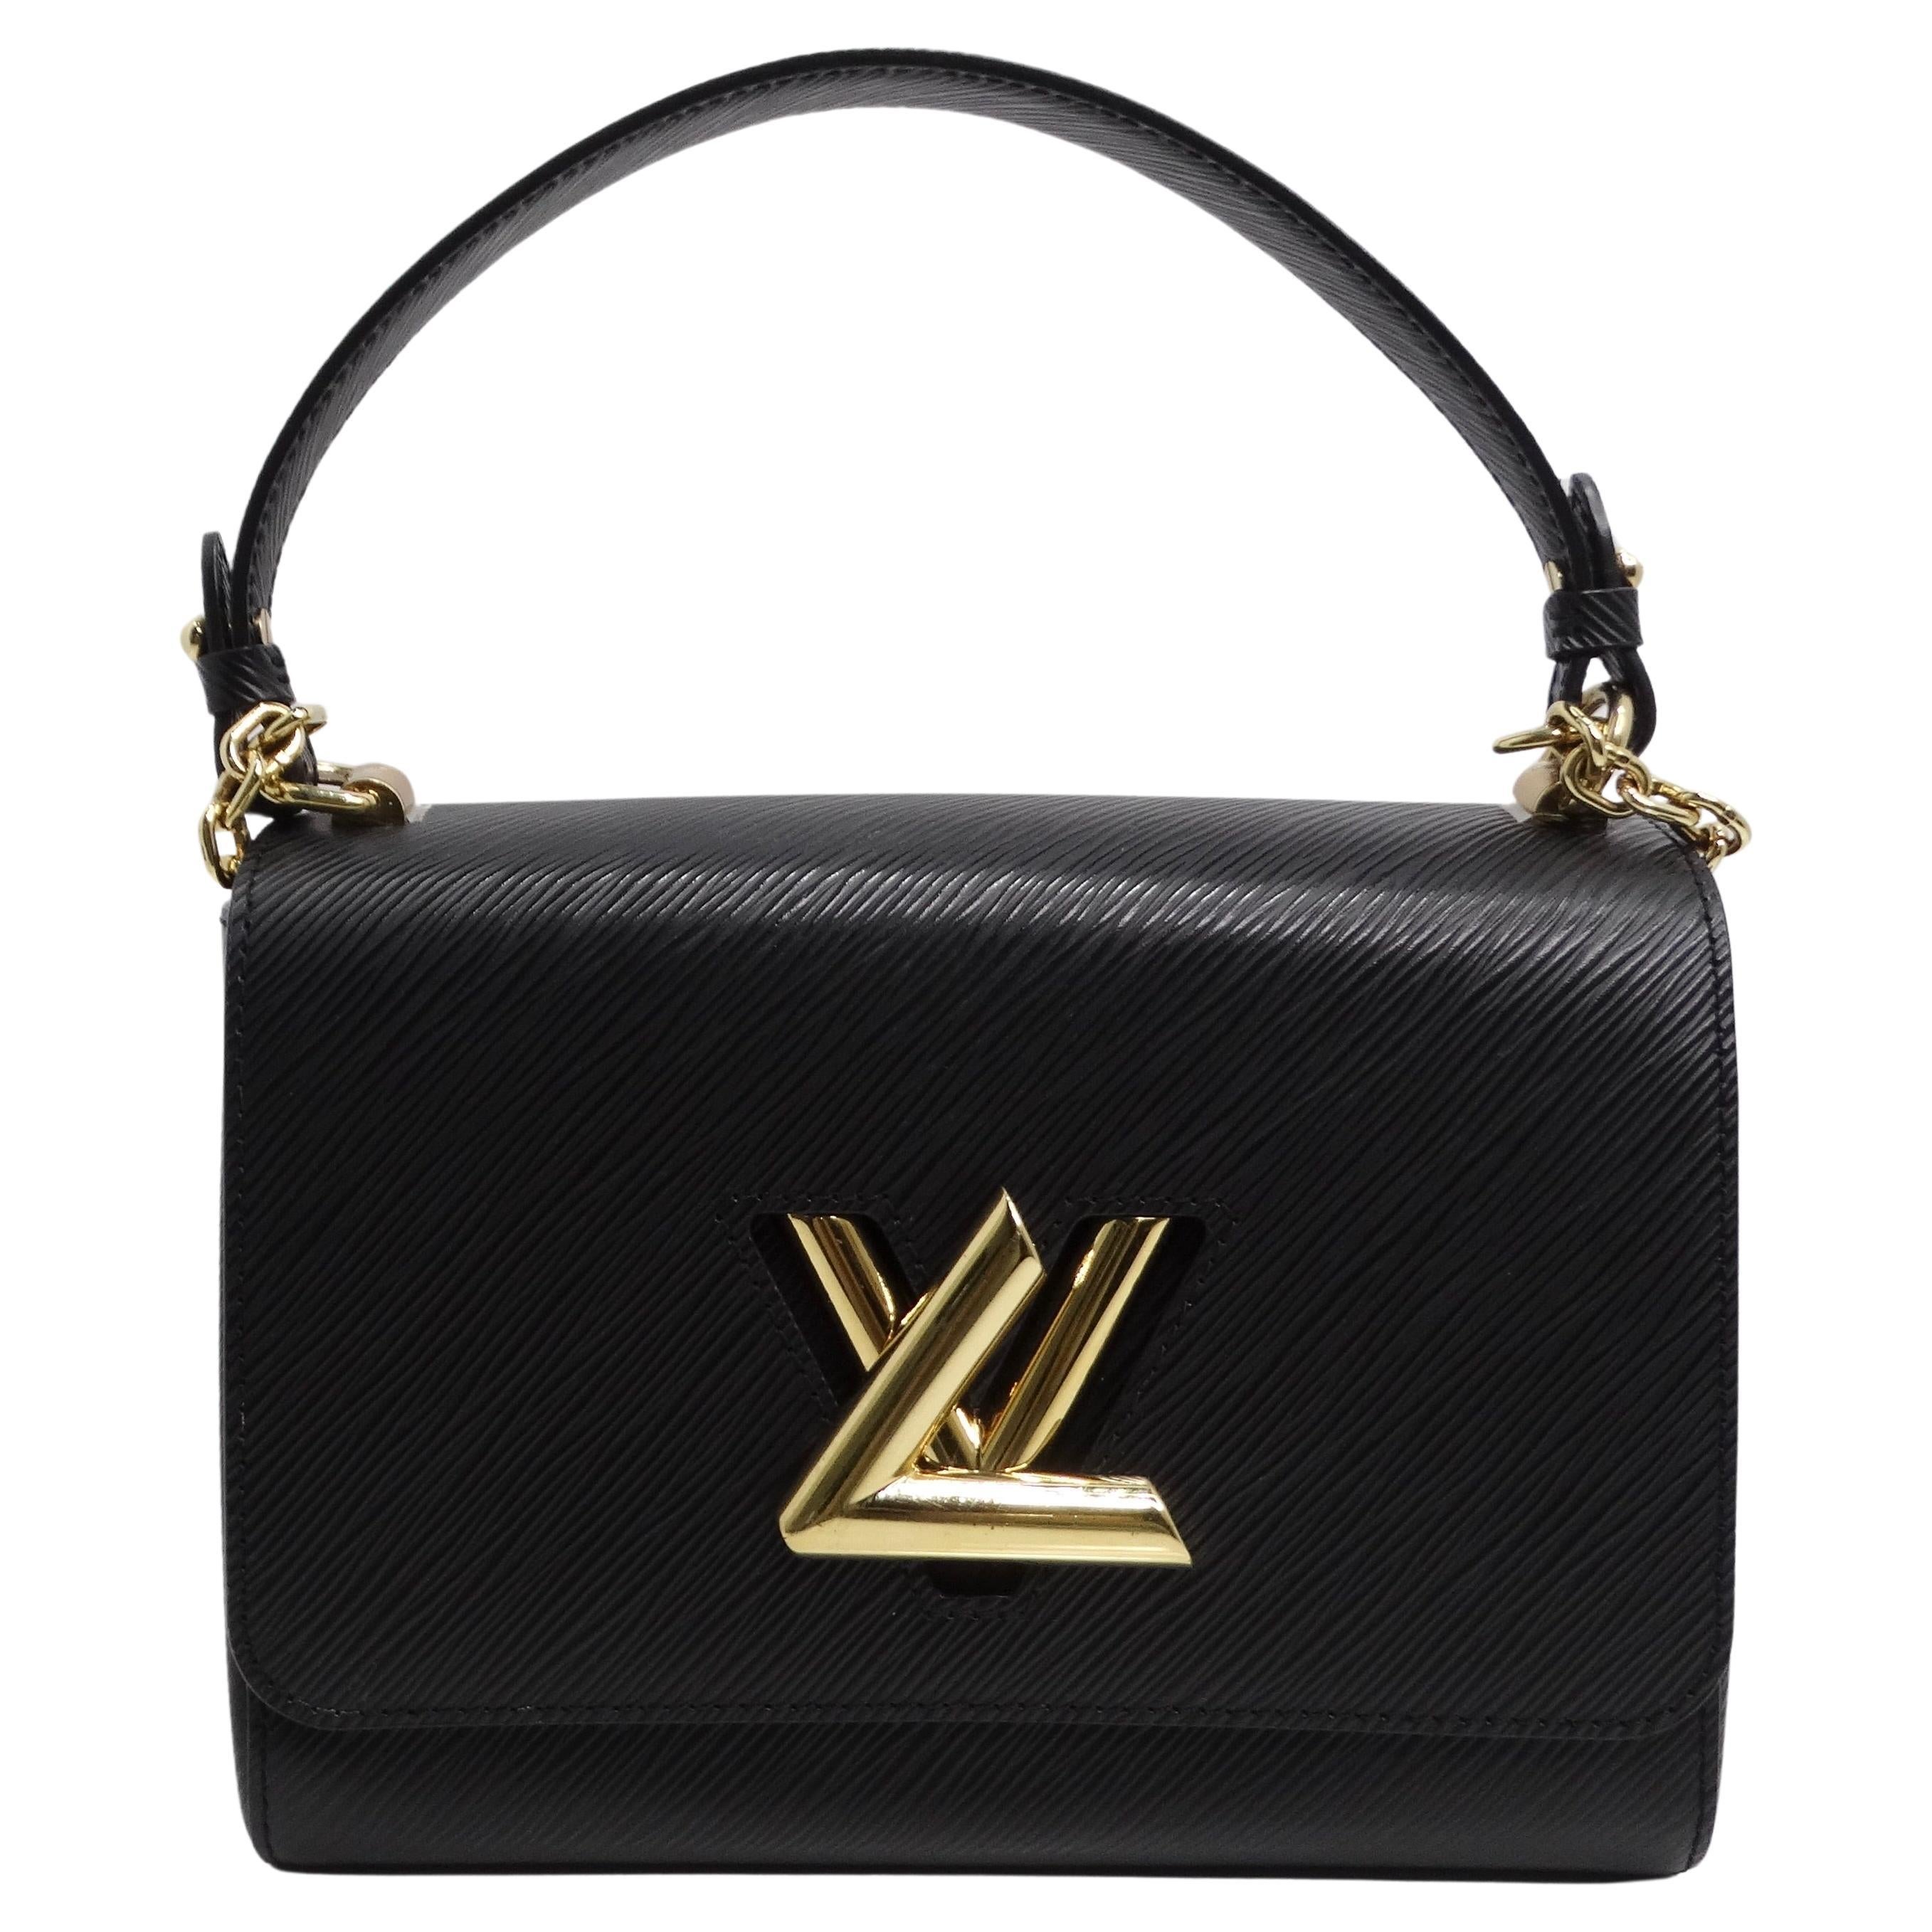 Does Louis Vuitton have sales?